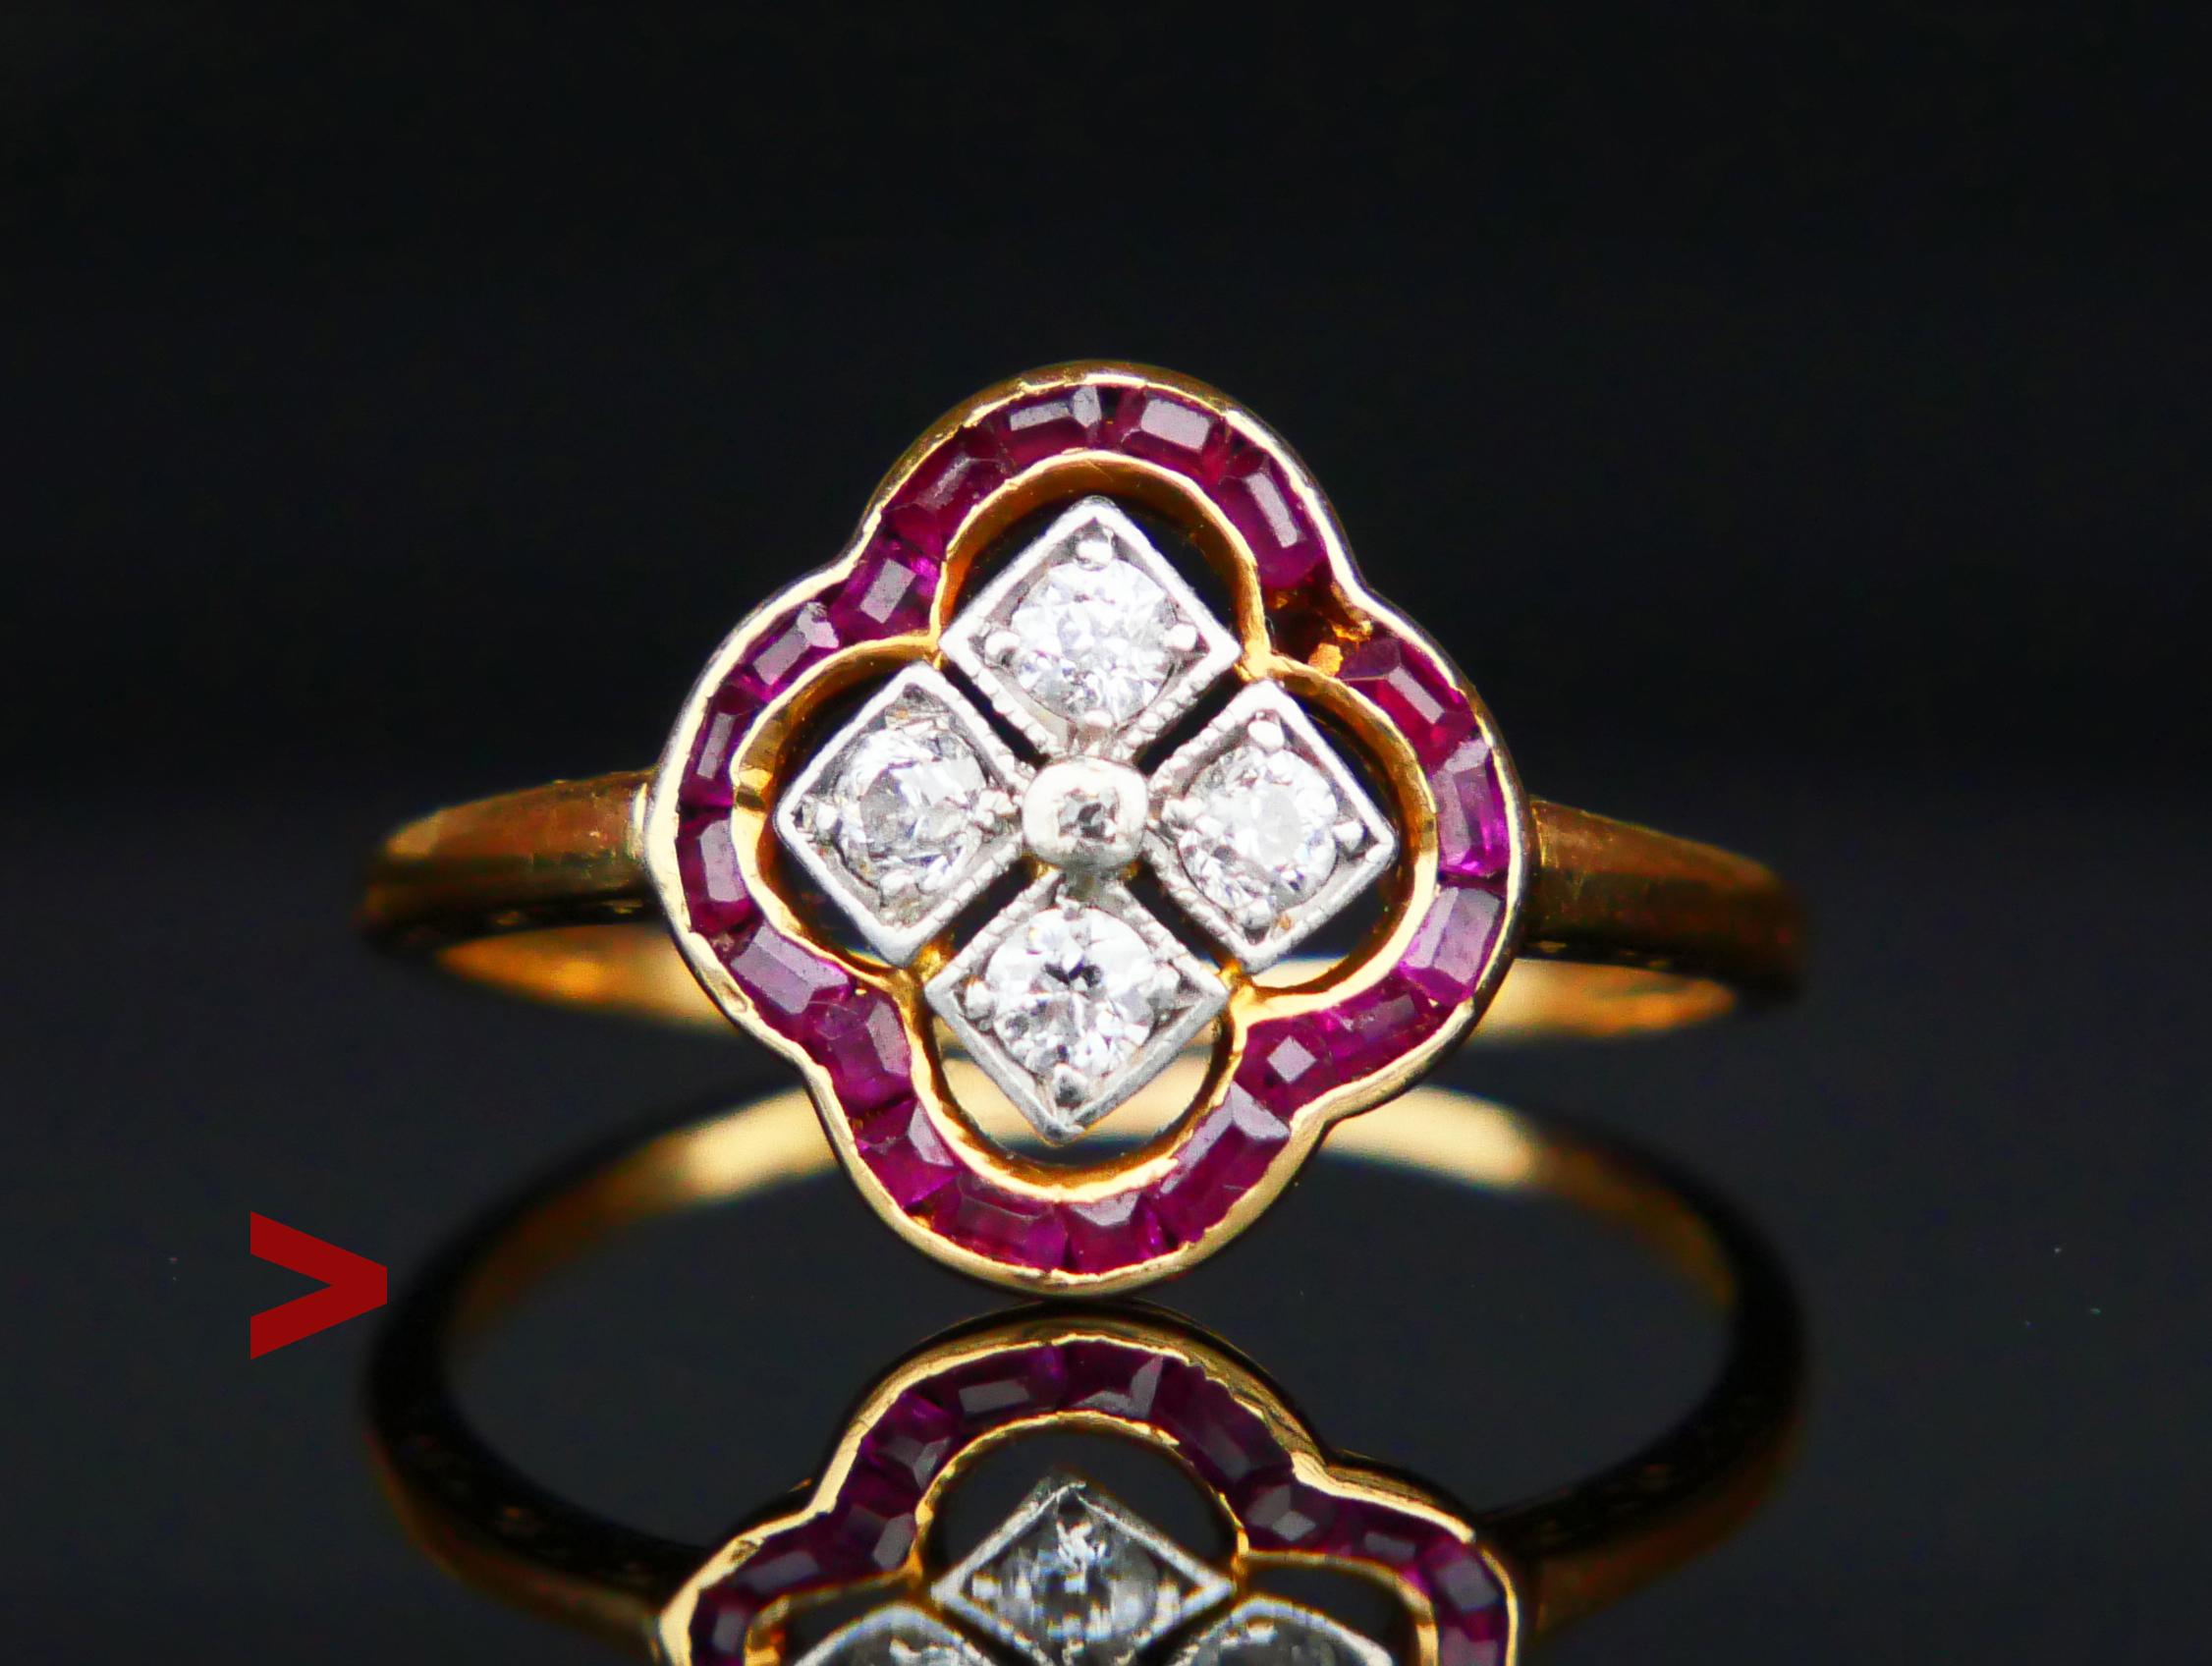 Ein Ring mit einer durchbrochenen Krone, die mit 19 Rubinen im Care-Schliff und 5 natürlichen Diamanten in Platinclustern besetzt ist.
Getragene schwedische Punzen: 18K, 3 Kronen, Hersteller, Jahreskombination C7 = handgefertigt im Jahr